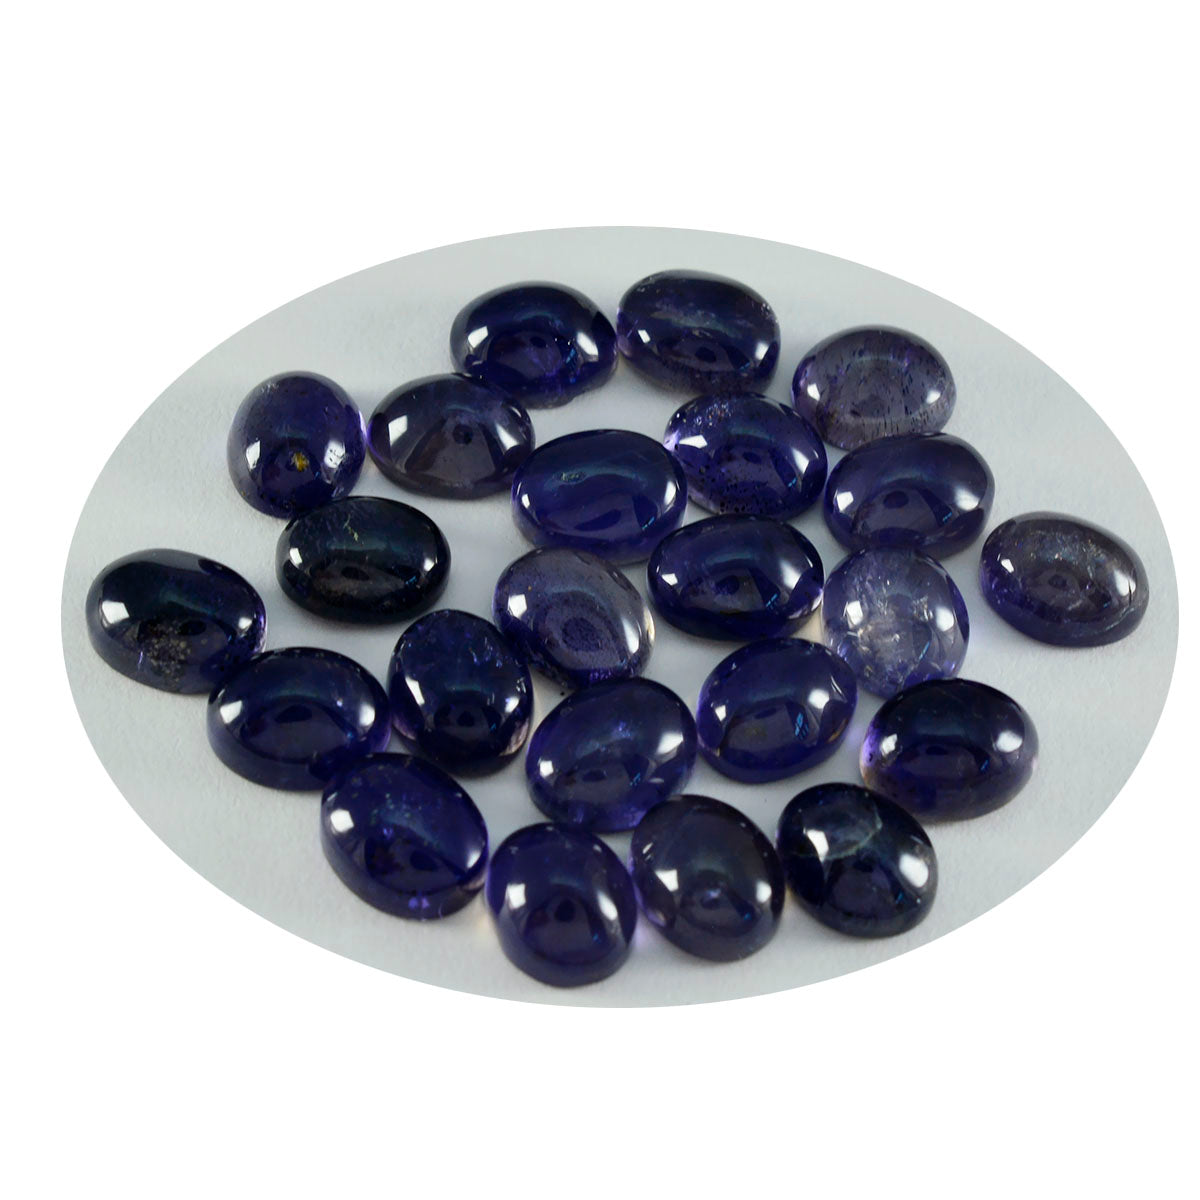 Riyogems 1PC blauwe ioliet cabochon 9x11 mm ovale vorm mooie kwaliteit losse edelstenen